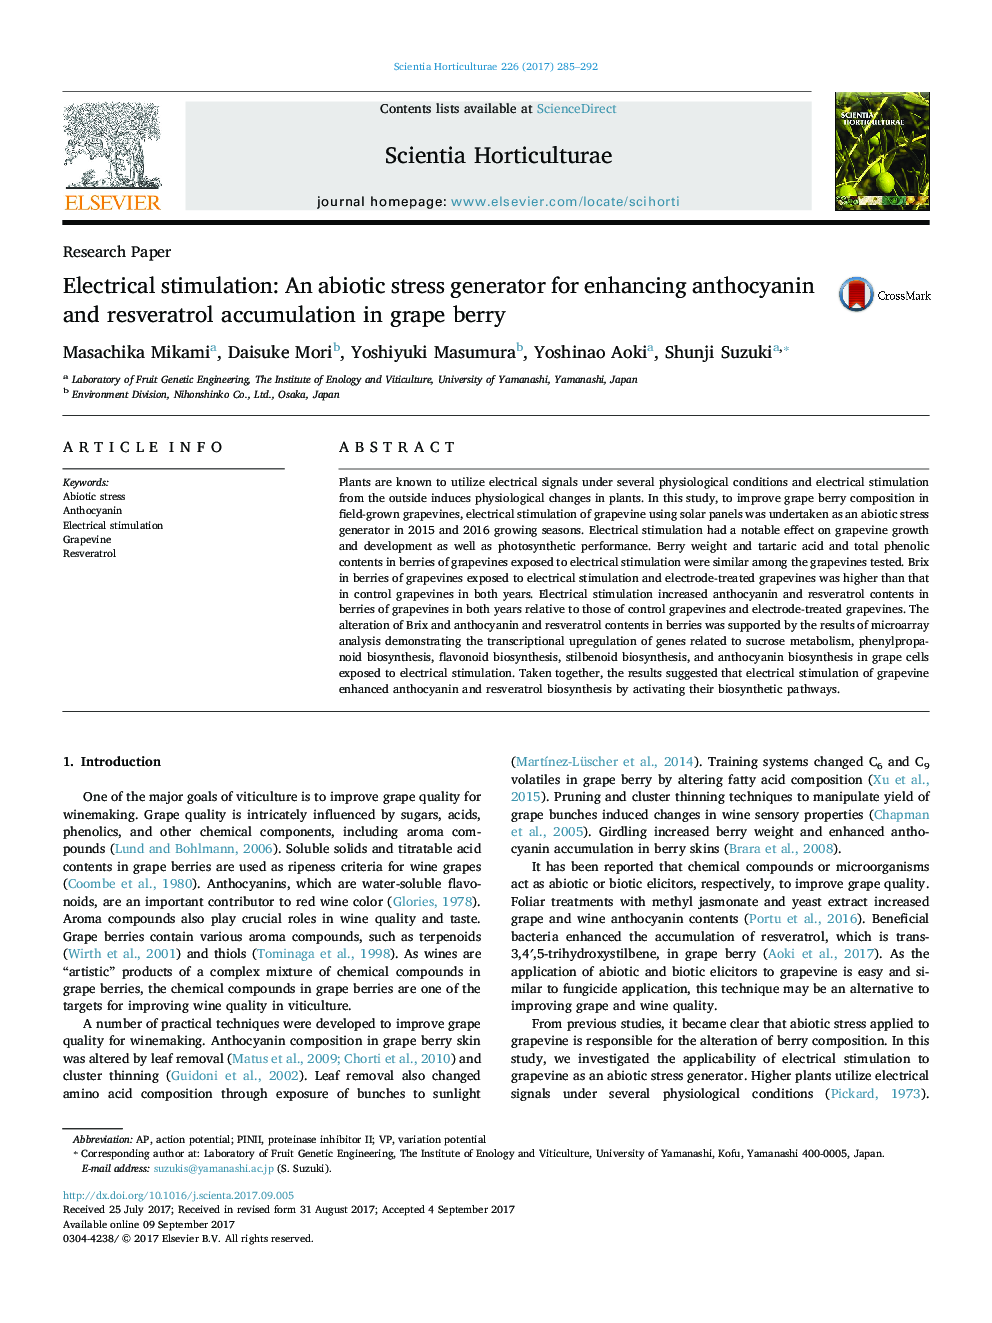 تحقیق مقاله: تحریک الکتریکی: یک ژنراتور تنش زیستی برای افزایش انجماد آنتوسیانین و رزوراترول در انگور 